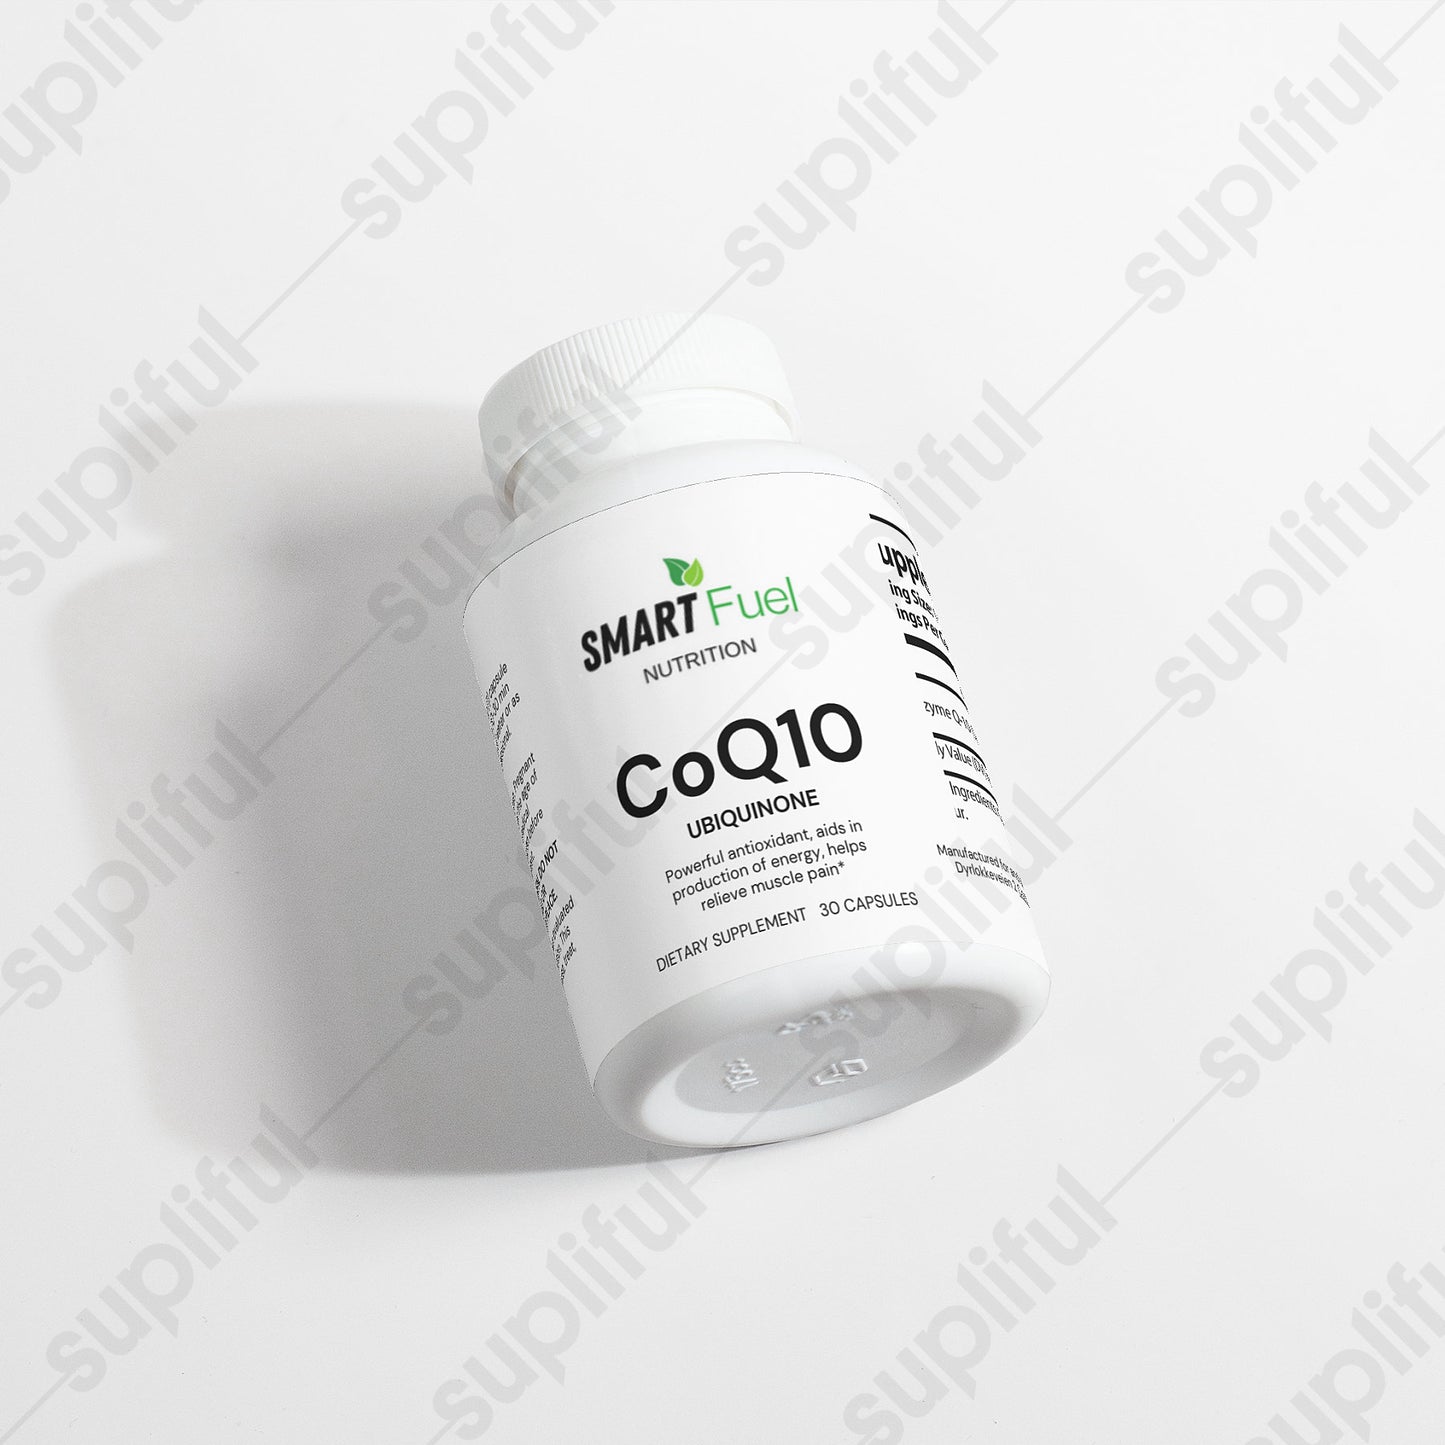 CoQ10 Ubiquinone